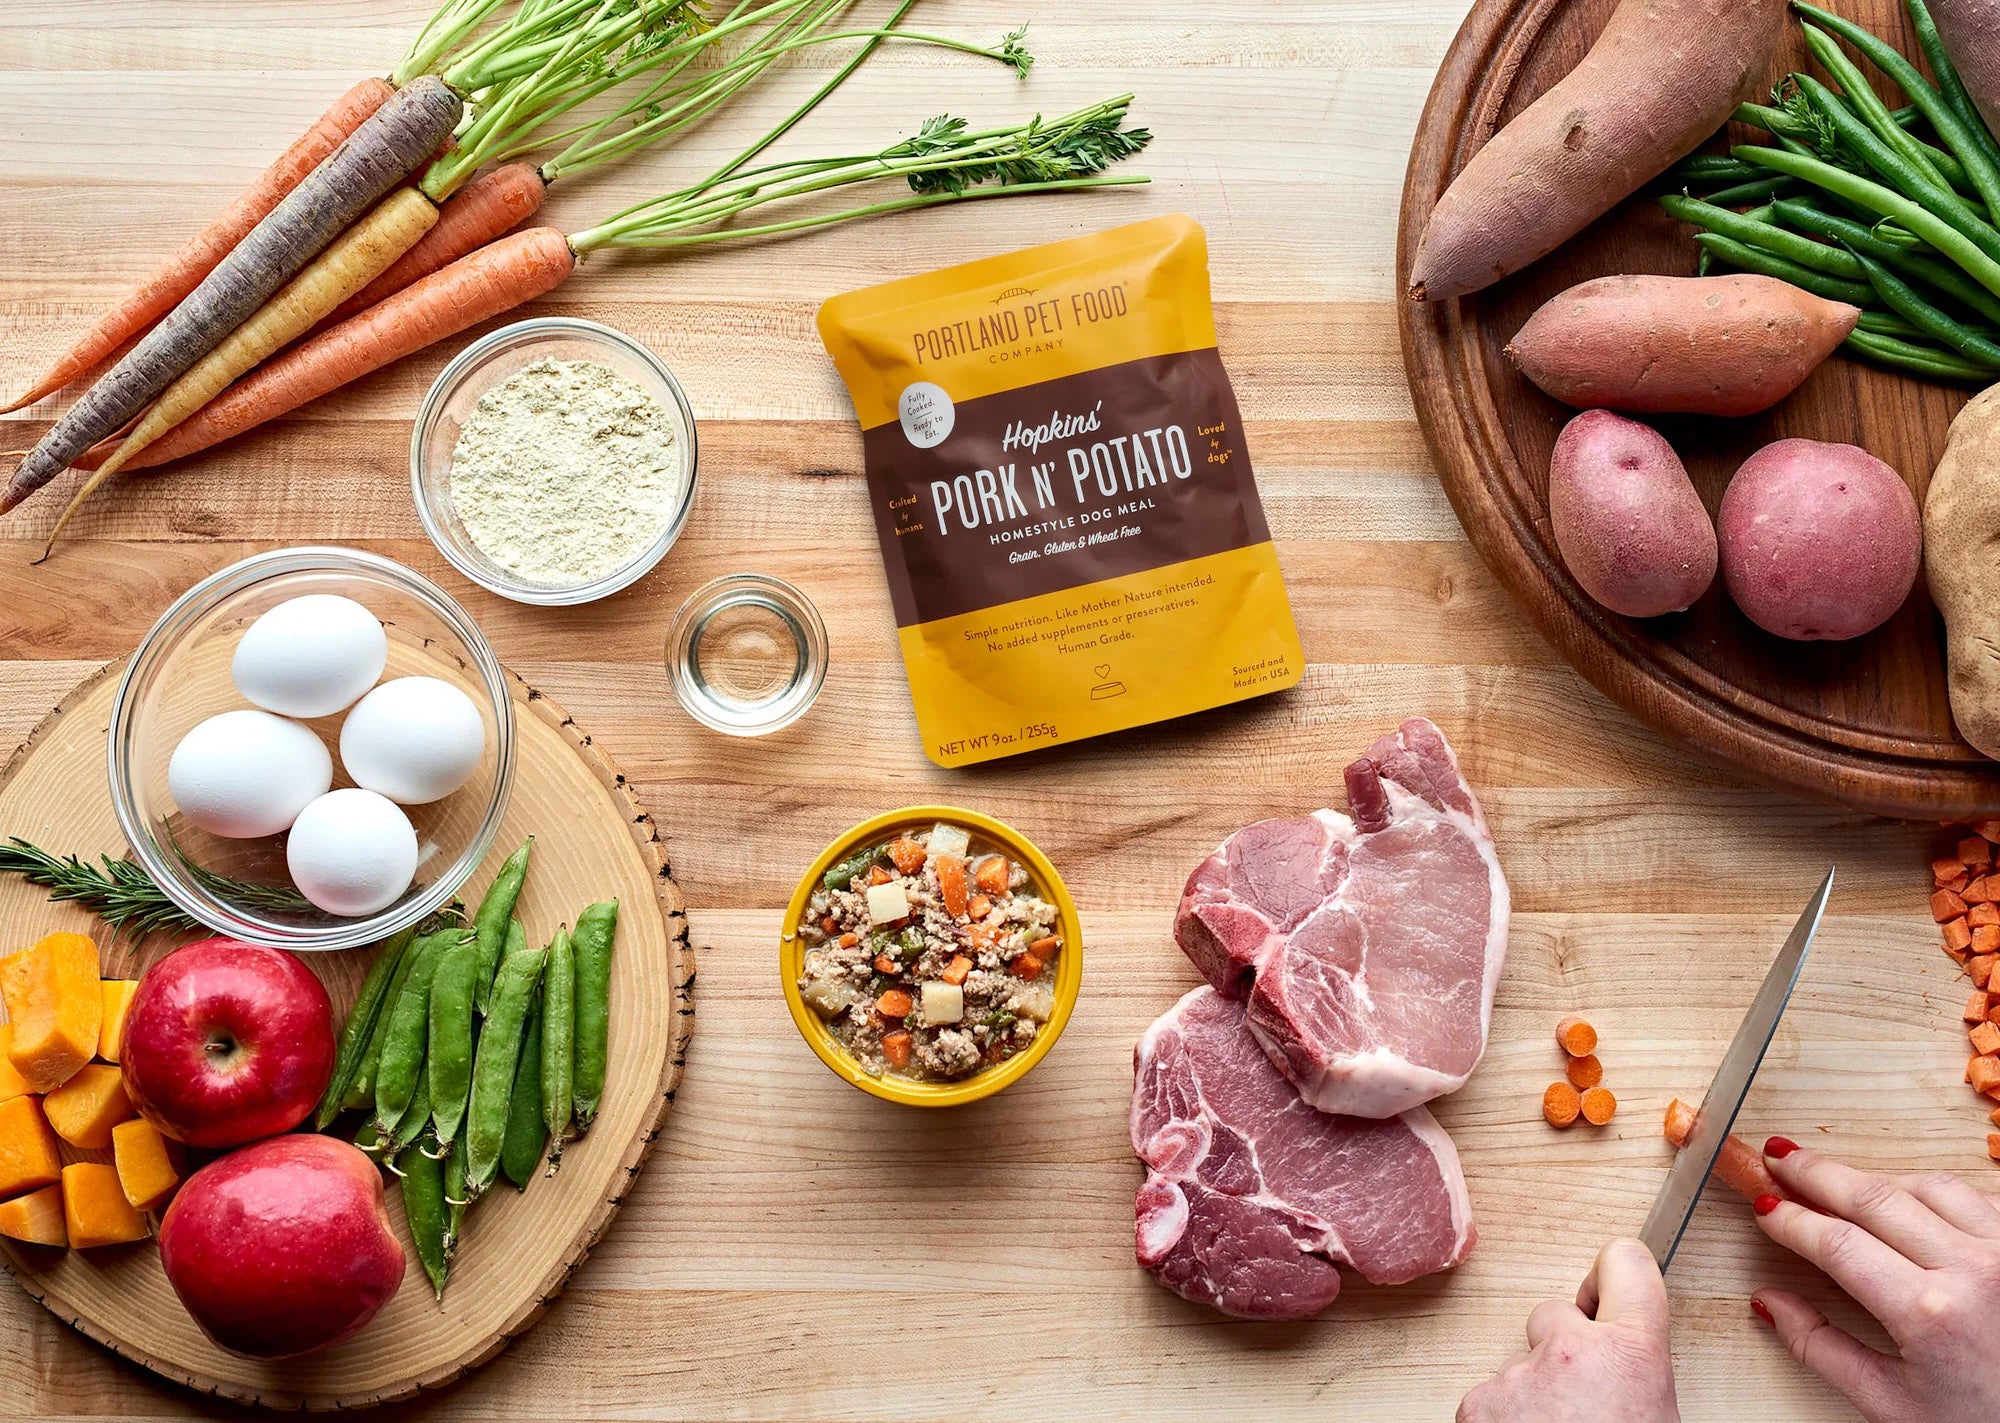 Portland Pet Food Company - Hopkins' Pork N' Potato Homestyle Dog Meal